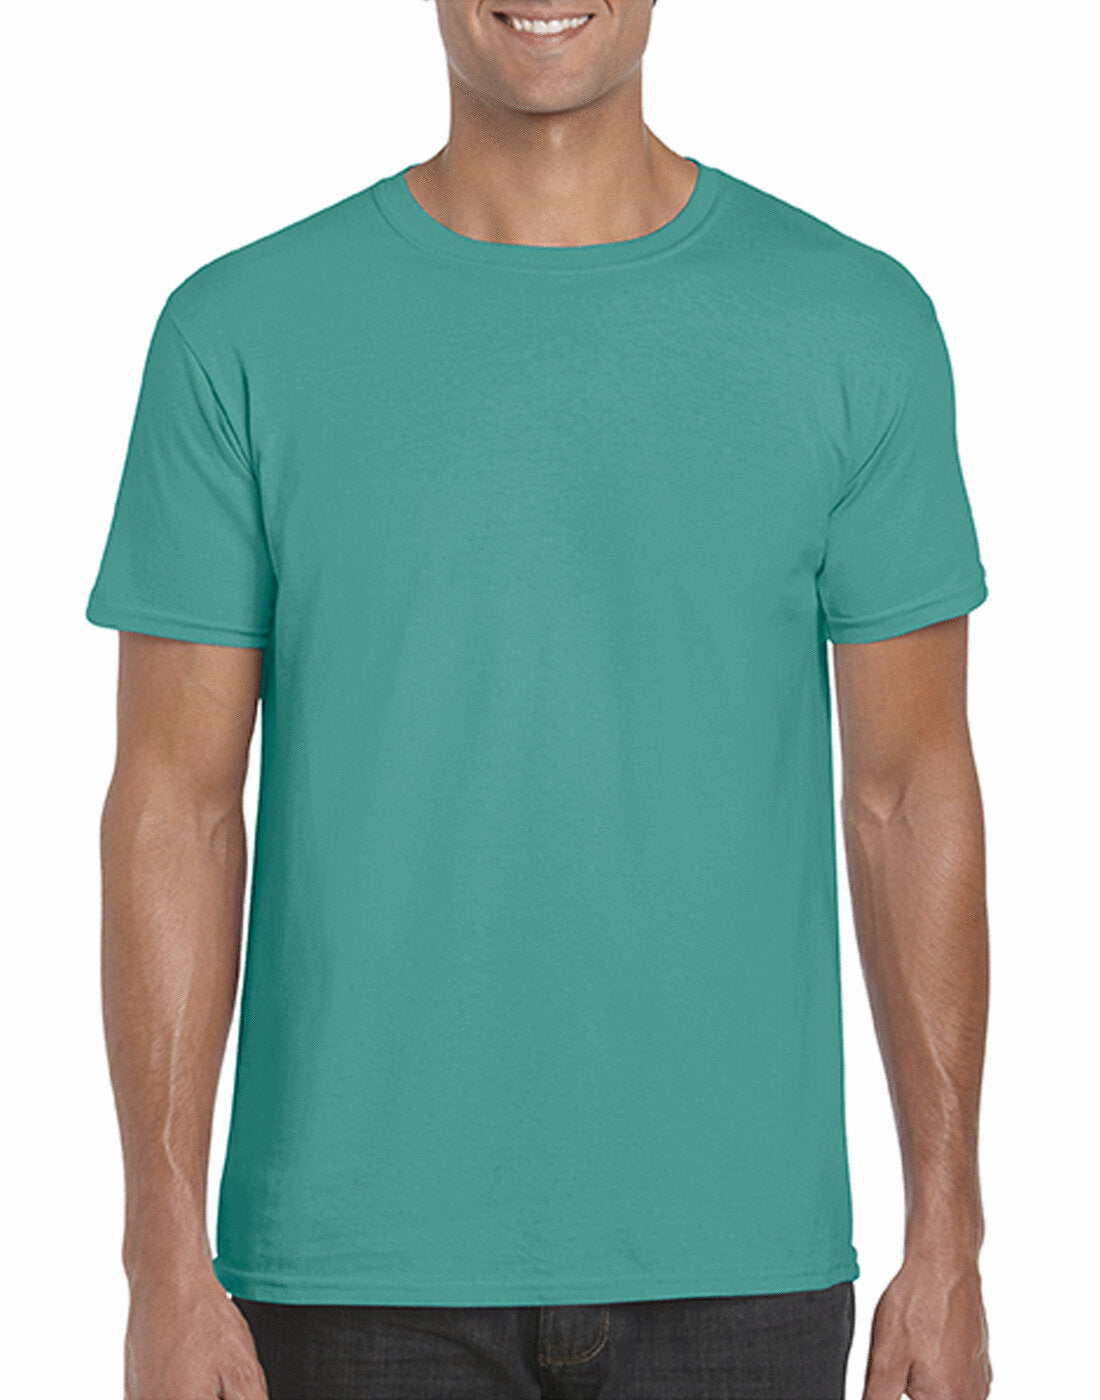 Gildan Adult Softstyle Ringspun T-Shirt - GD01 - Jade Dome